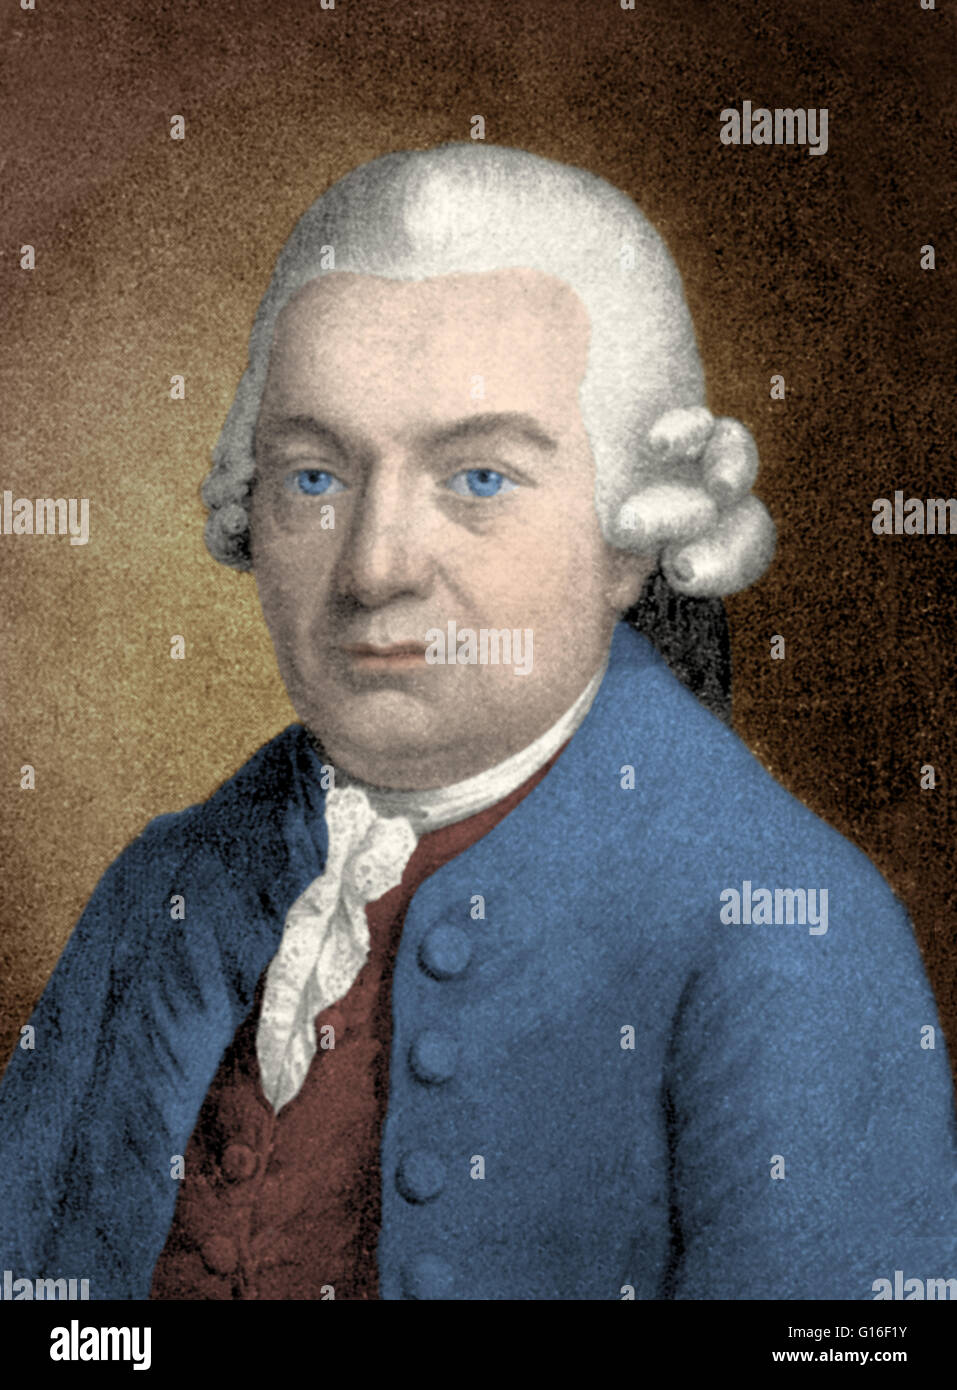 Carl Philipp Emanuel Bach (8 mars 1714 - 14 décembre 1788) était un musicien et compositeur de la période classique, le cinquième enfant et second fils survivant () de Johann Sebastian Bach et Maria Barbara Bach. C. P. E. Bach était un compositeur workin Banque D'Images